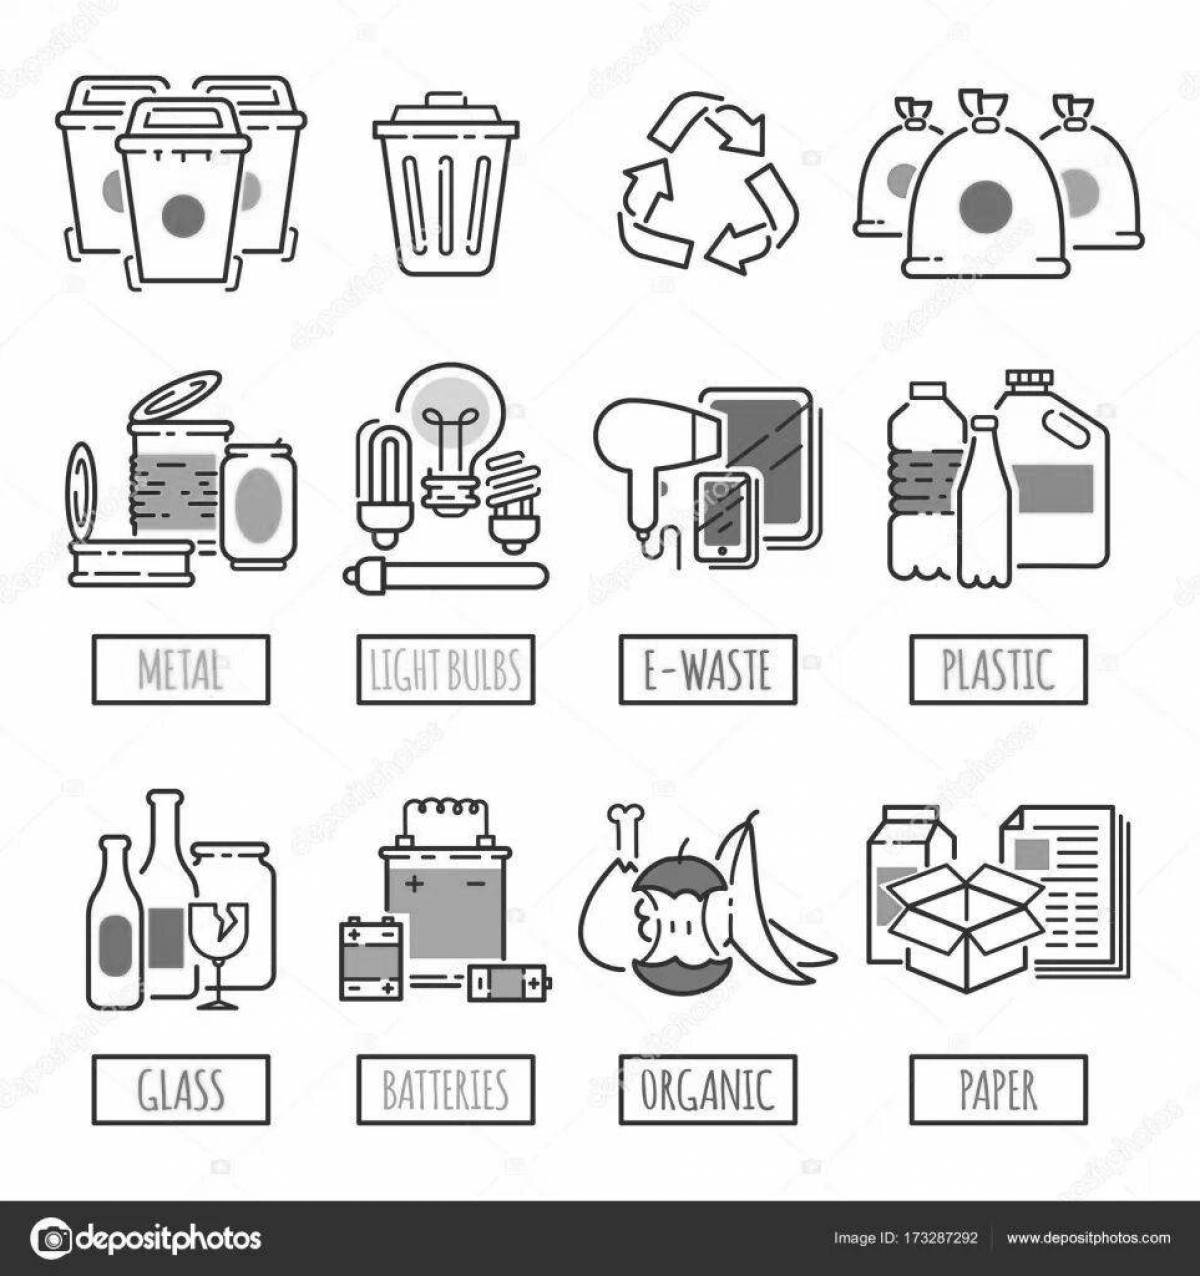 Fun sorting garbage coloring page